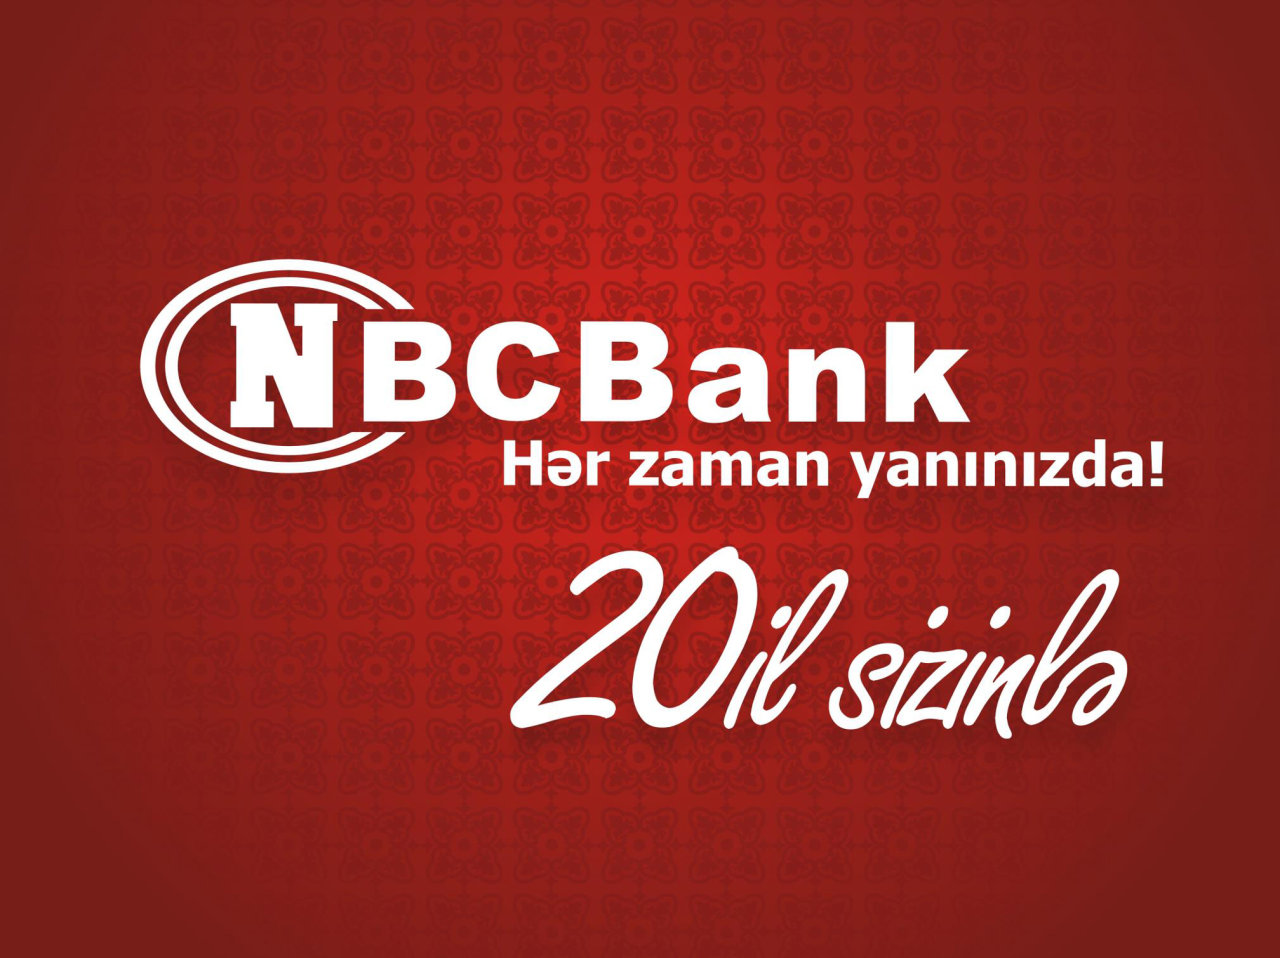 "NBC Bank" Uşaqların Beynəlxalq Müdafiəsi Günü münasibətilə yeni məhsul təqdim edib